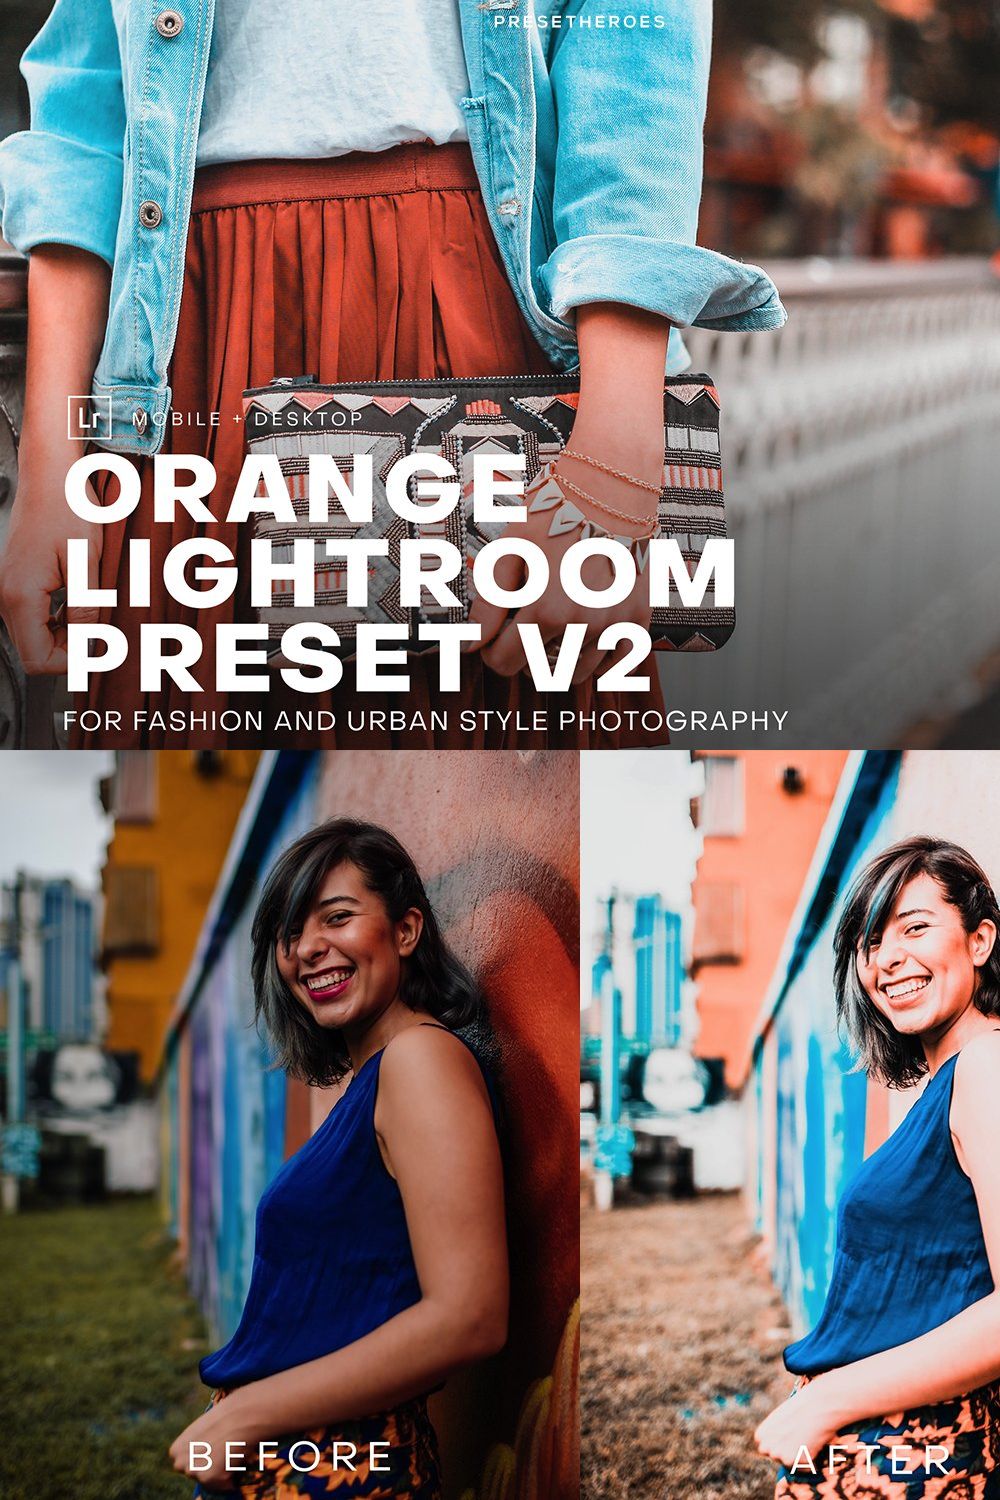 PH Orange Lightroom Presets V2 pinterest preview image.